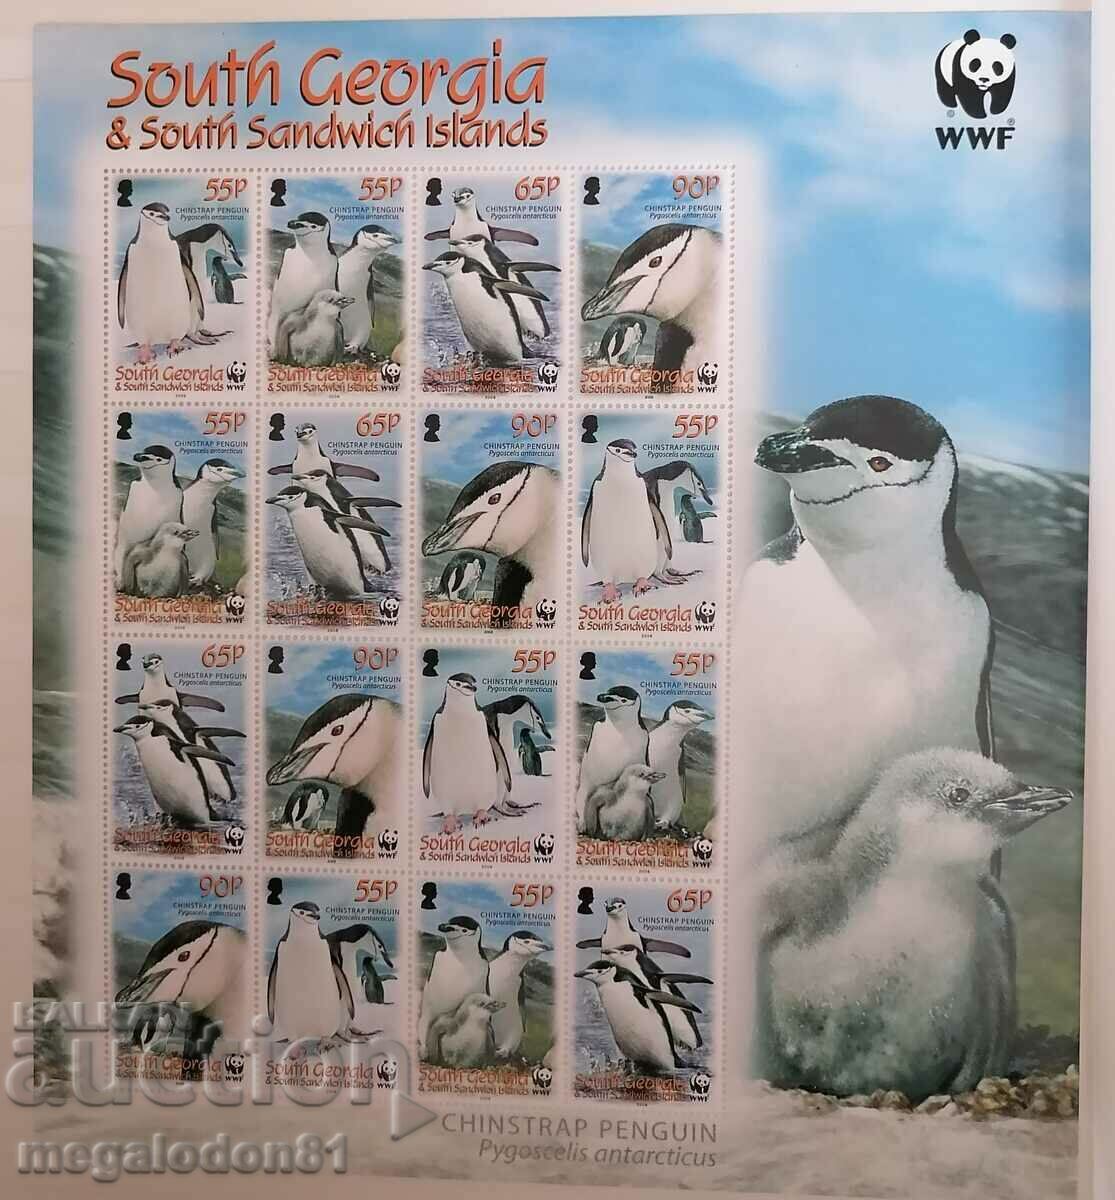 Georgia de Sud - fauna WWF, pinguini